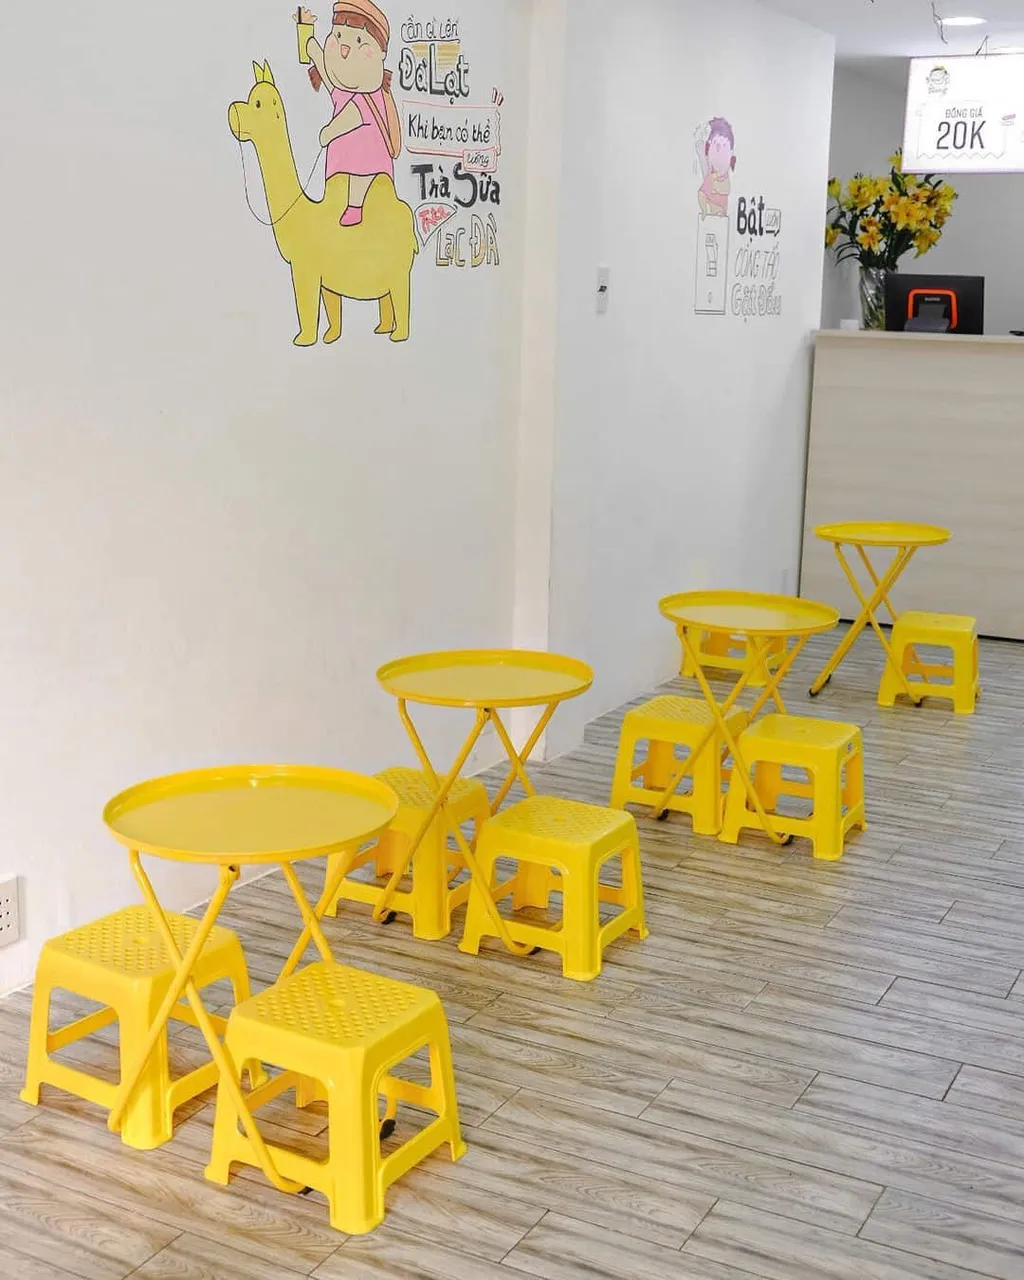 Bàn ghế tại đây có màu vàng năng động, kết hợp với những góc tường trang trí vui nhộn